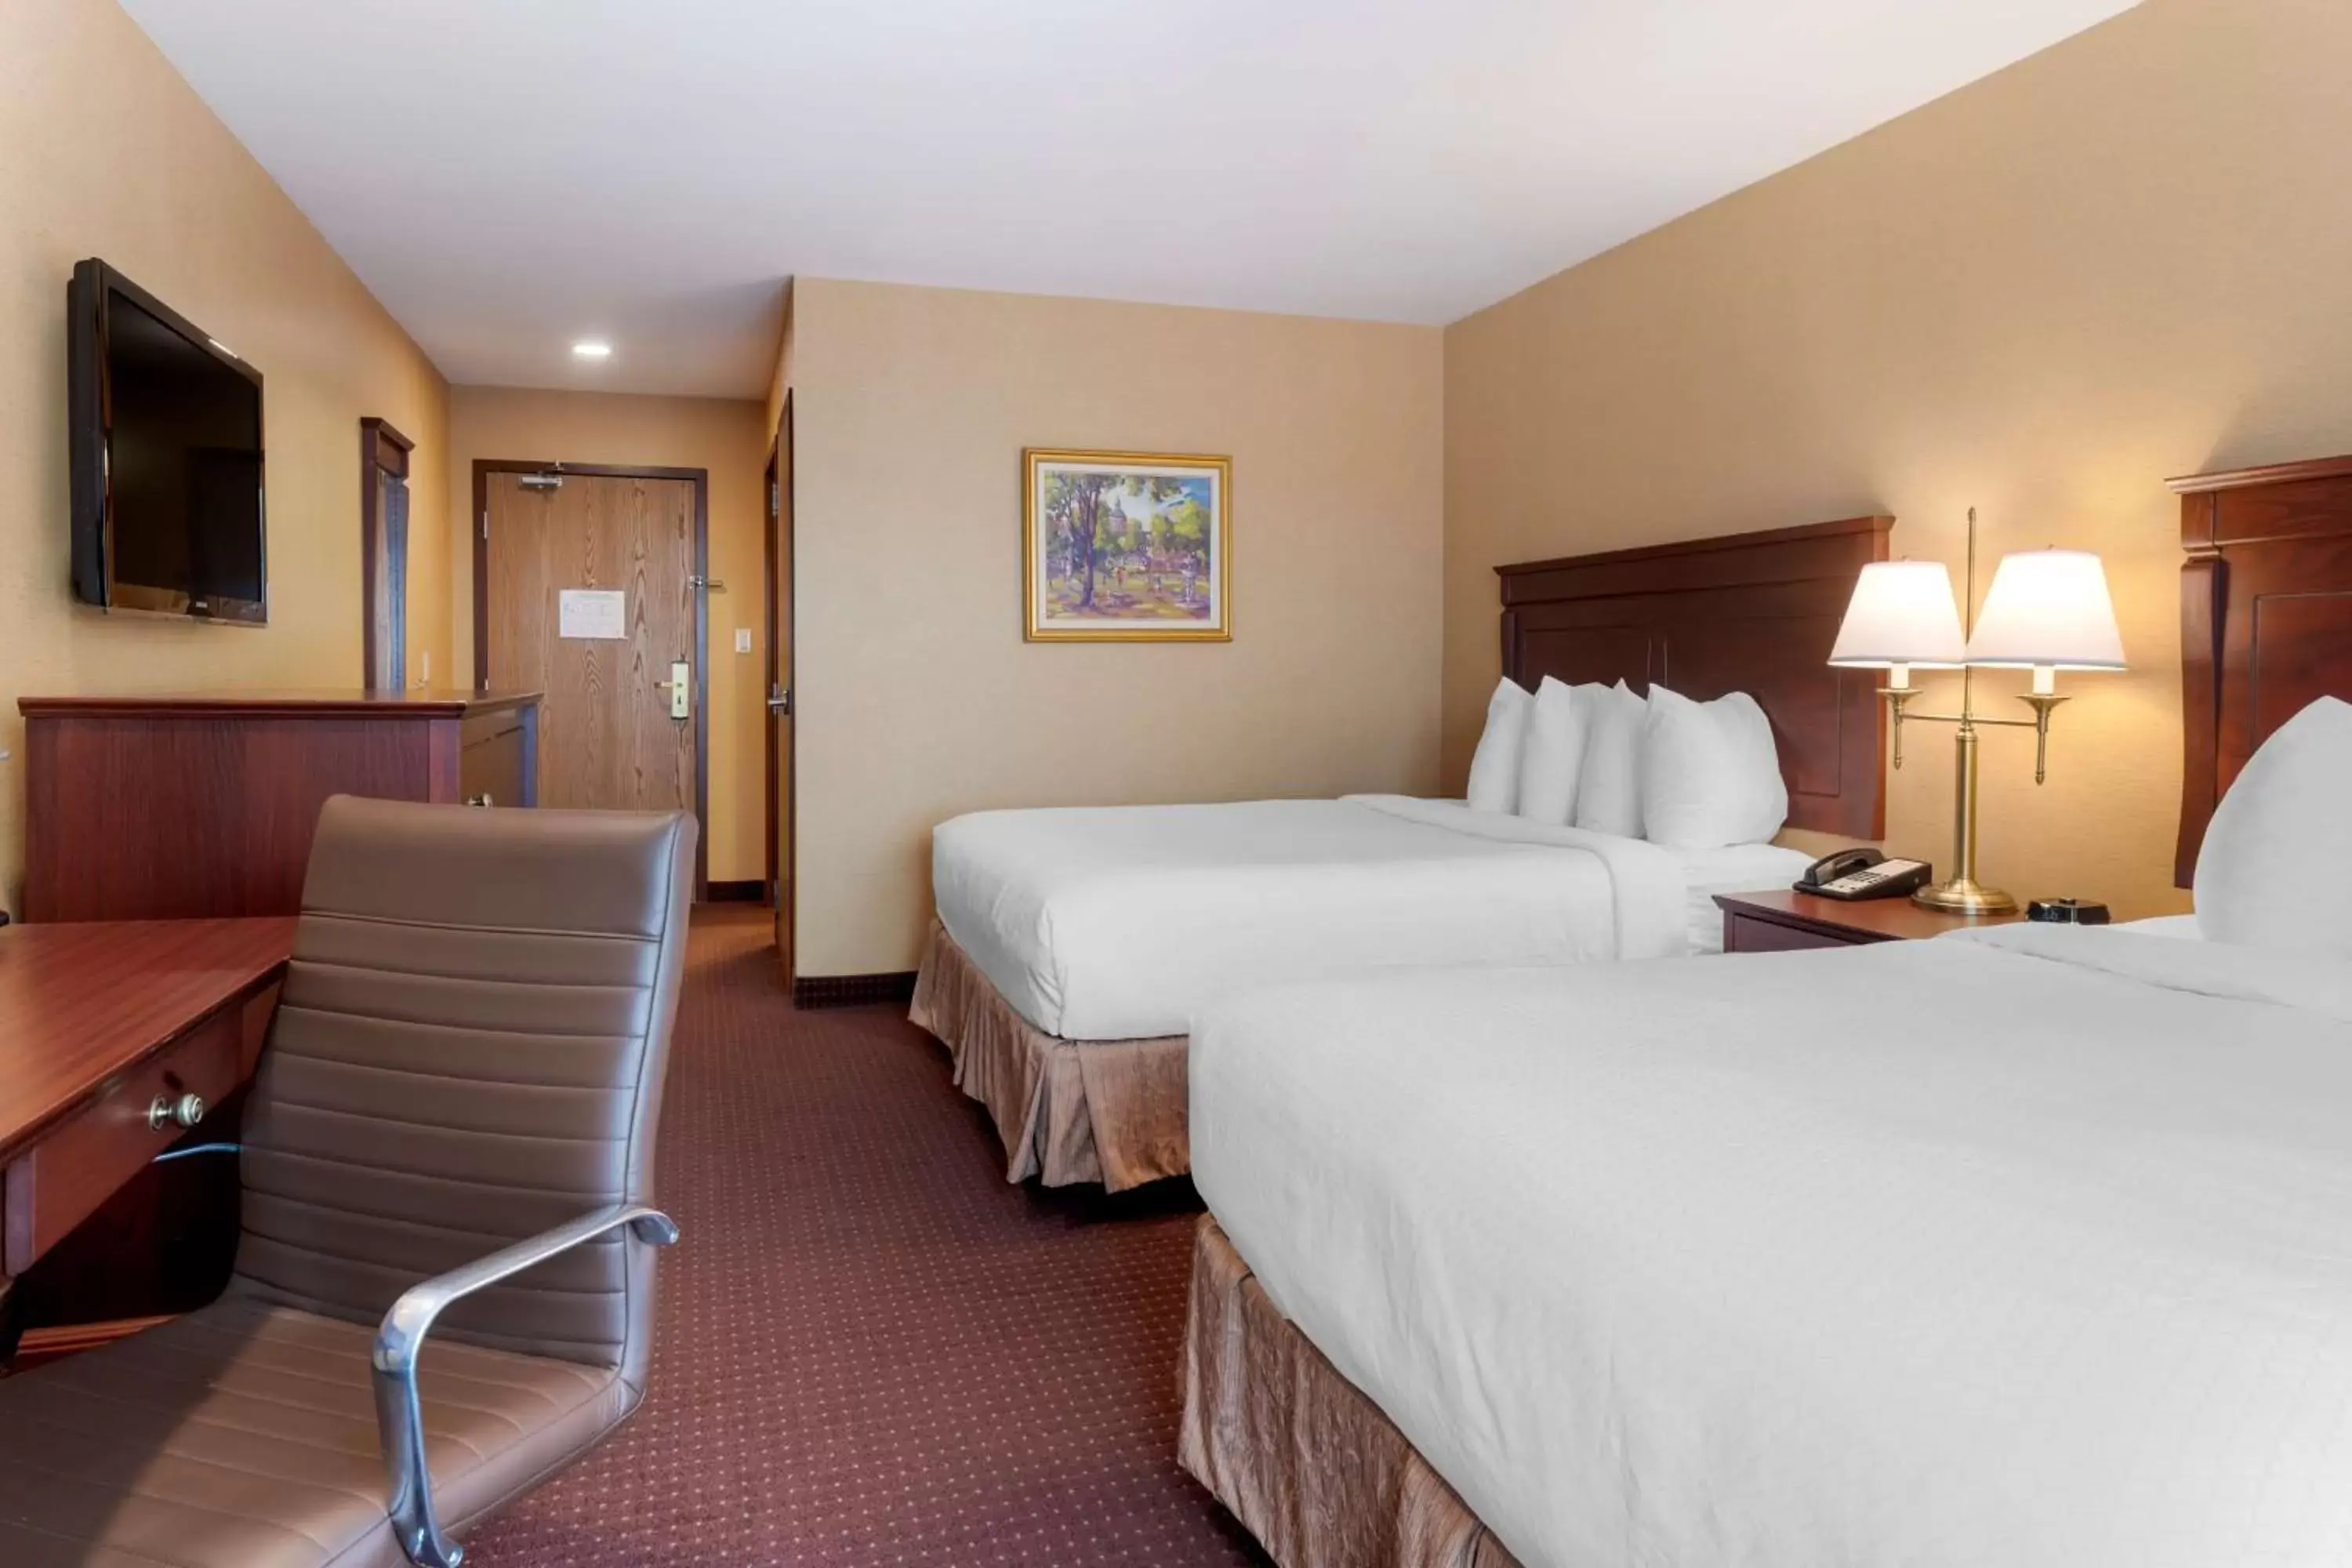 Bedroom, Bed in Best Western Plus Fredericton Hotel & Suites